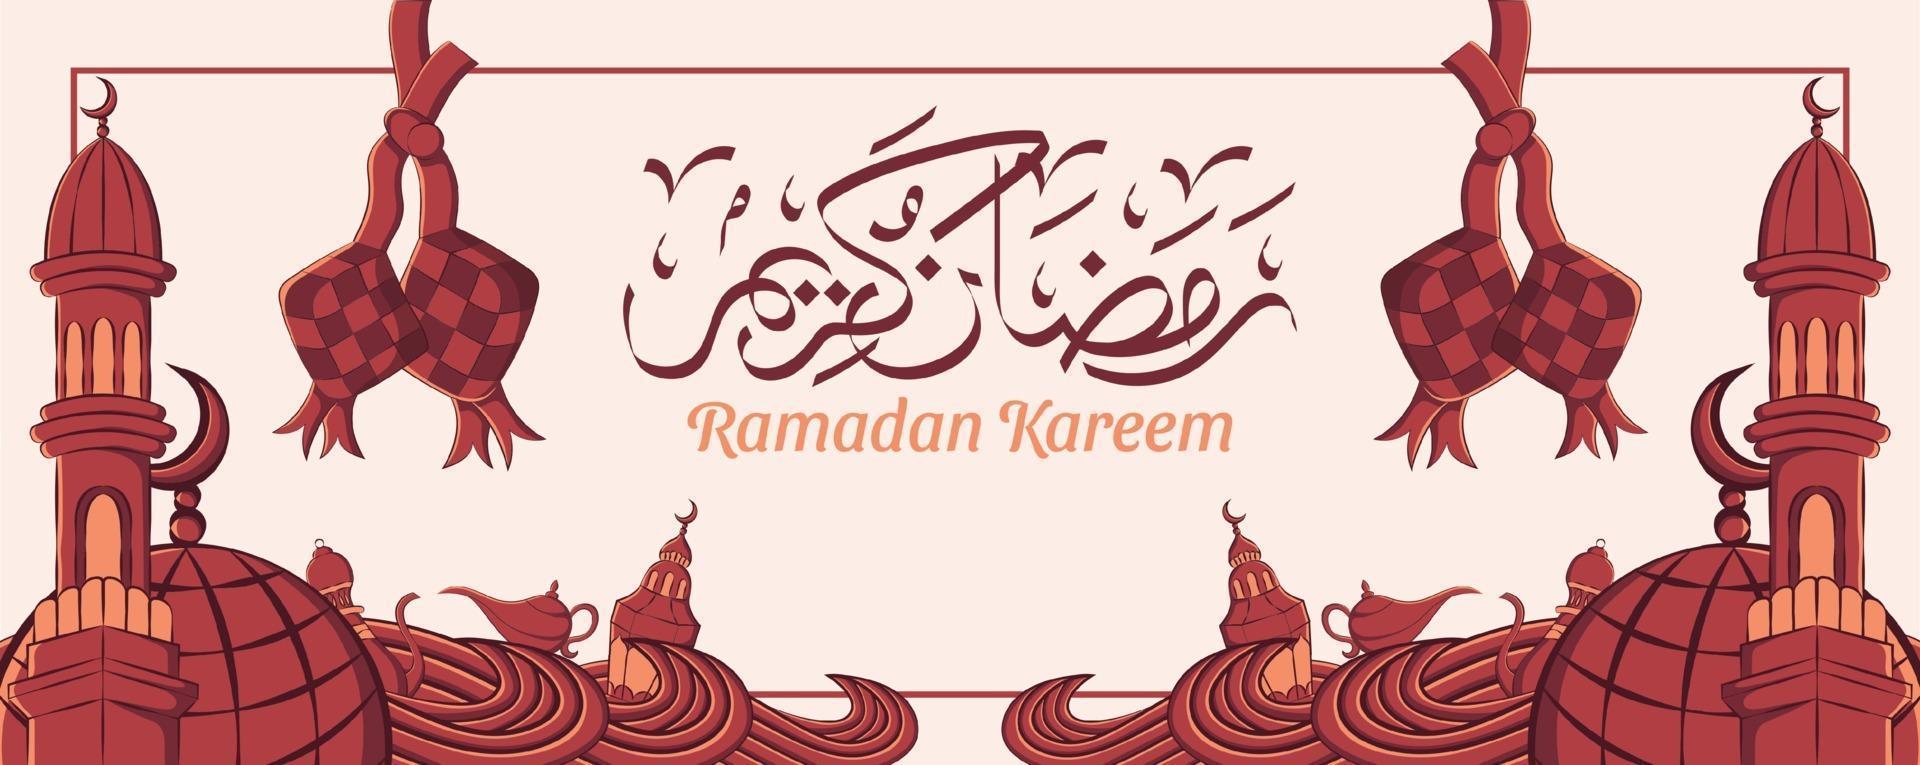 banner di ramadan kareem con ornamento illustrazione islamica disegnata a mano su sfondo bianco. vettore